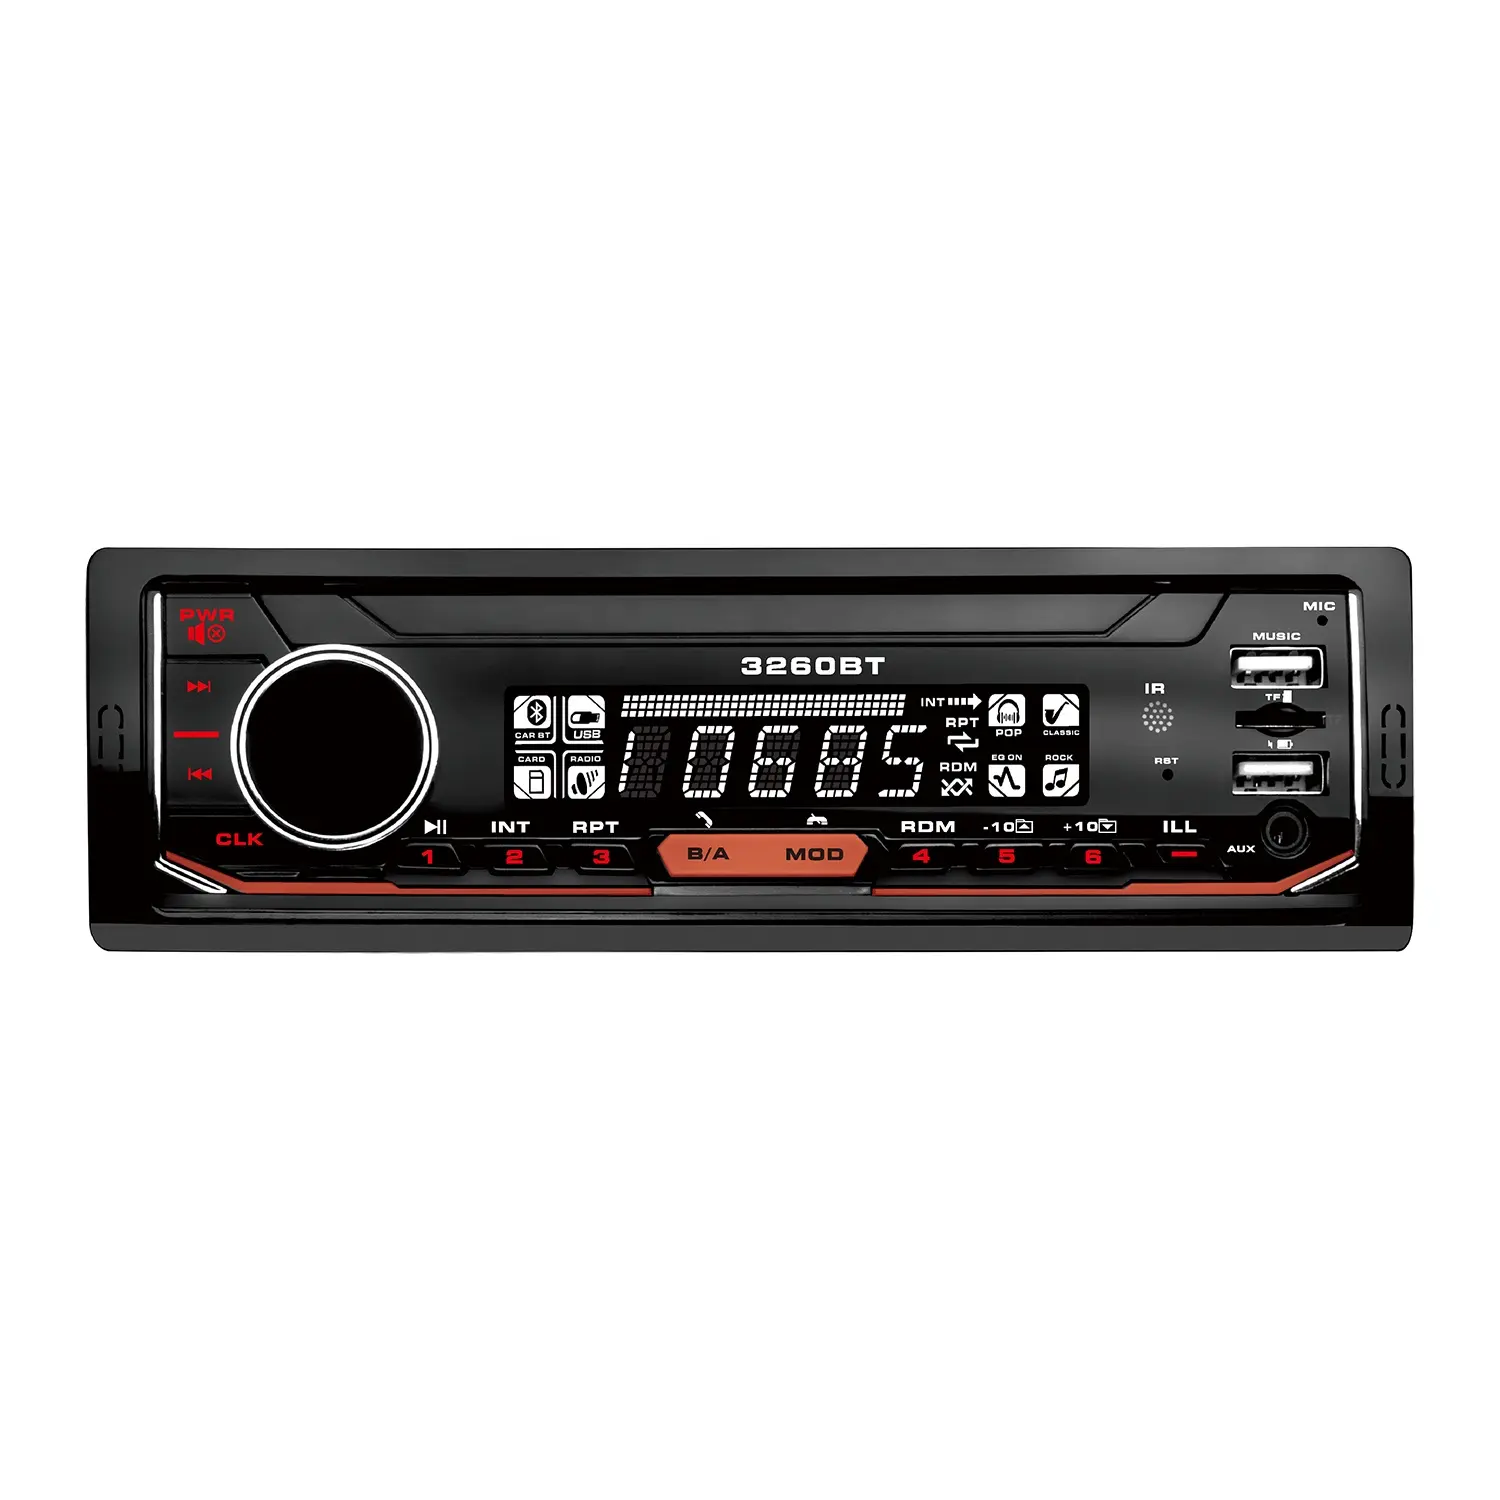 Único DIN Bluetooth-Habilitado Carro Rádio Estéreo com USB MP3 Player USB/SD PC Interface RDS/Tela LCD Manual do Usuário Habilitado